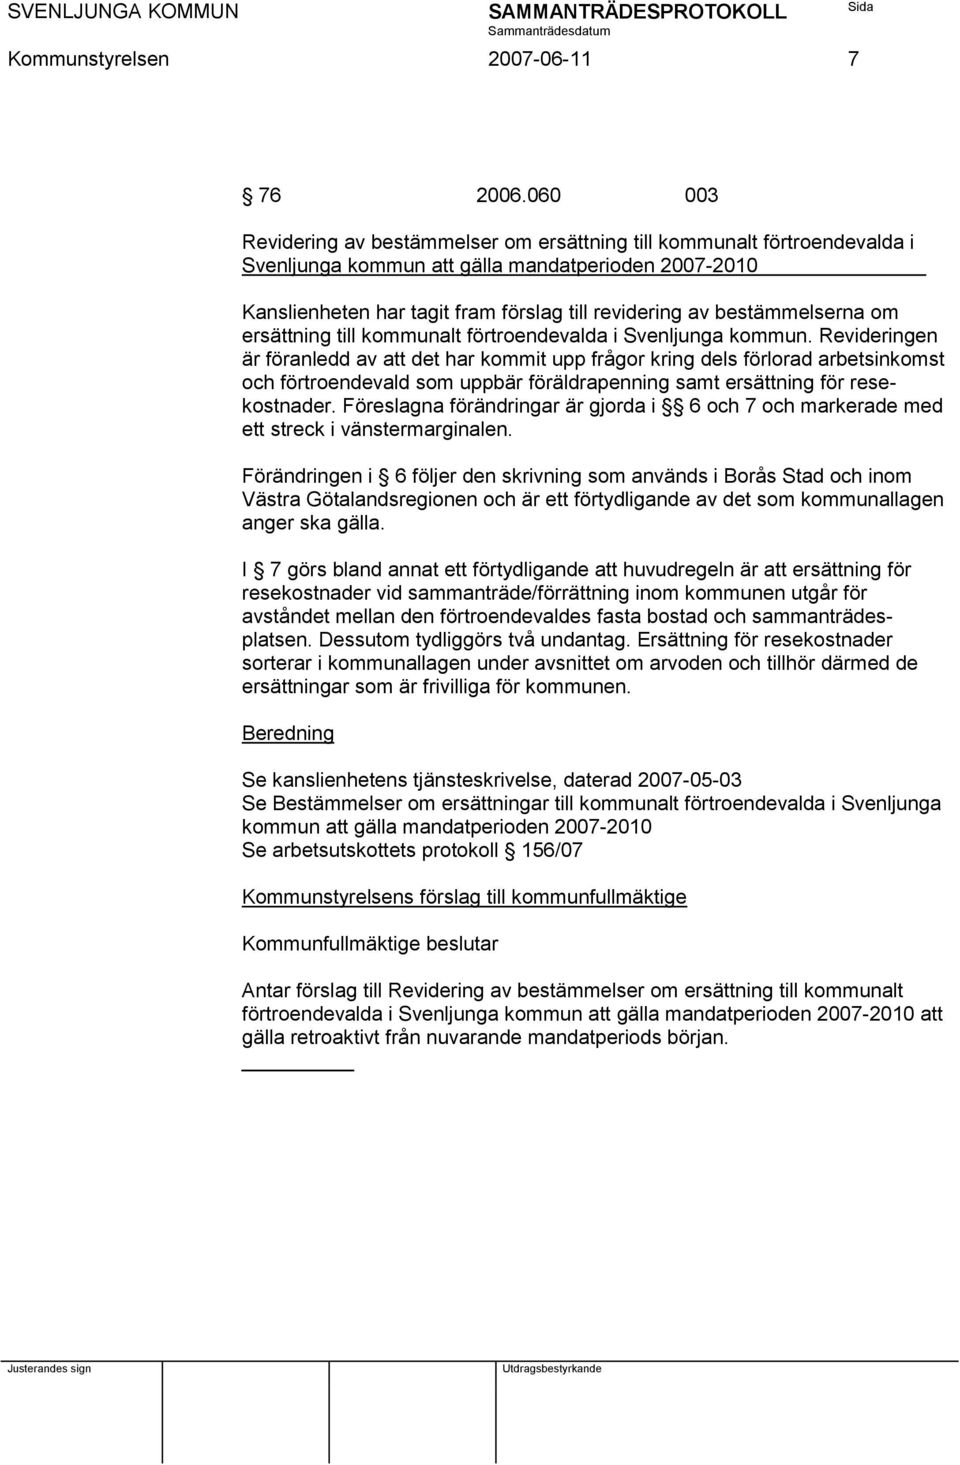 bestämmelserna om ersättning till kommunalt förtroendevalda i Svenljunga kommun.